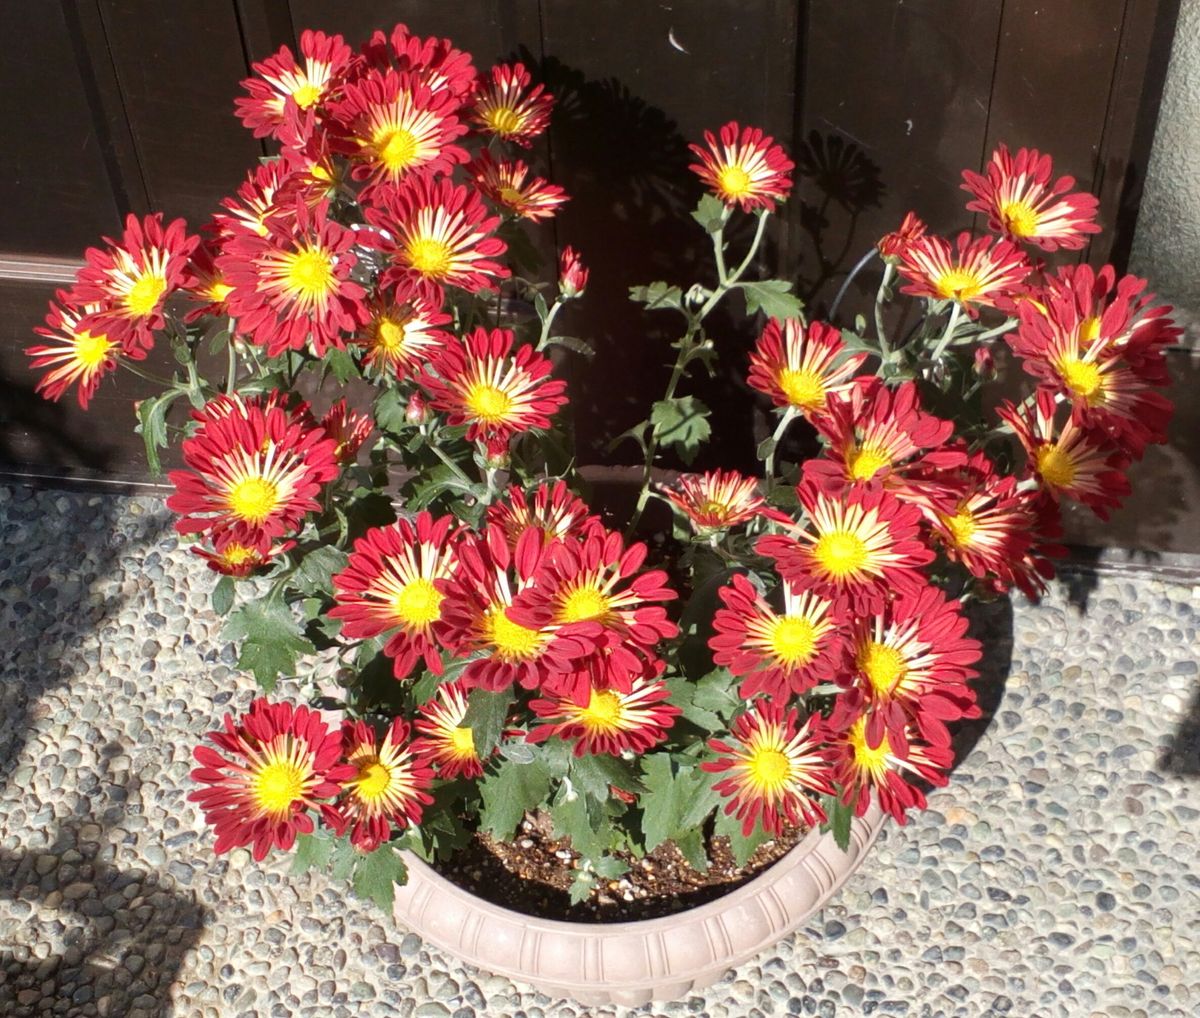 太陽の光をいっぱい浴びて大喜びの赤い「風車菊」達です🙌 １１月７日撮影